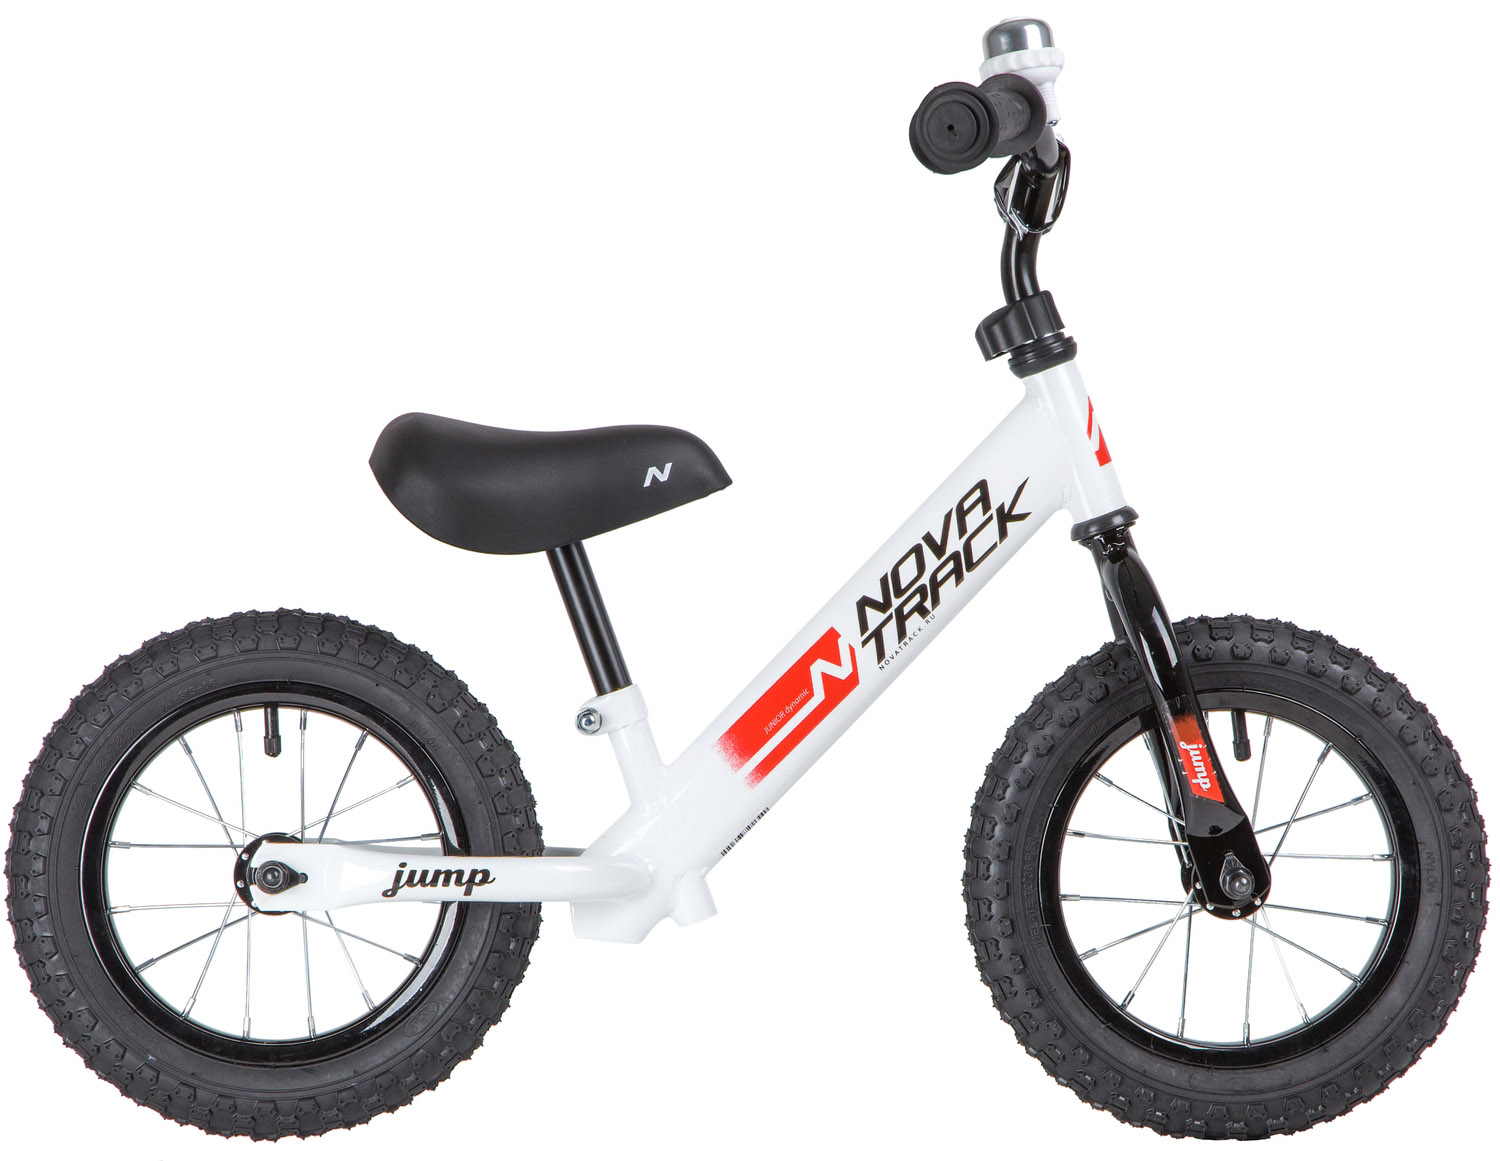  Отзывы о Детском велосипеде Novatrack Jump 12 2020